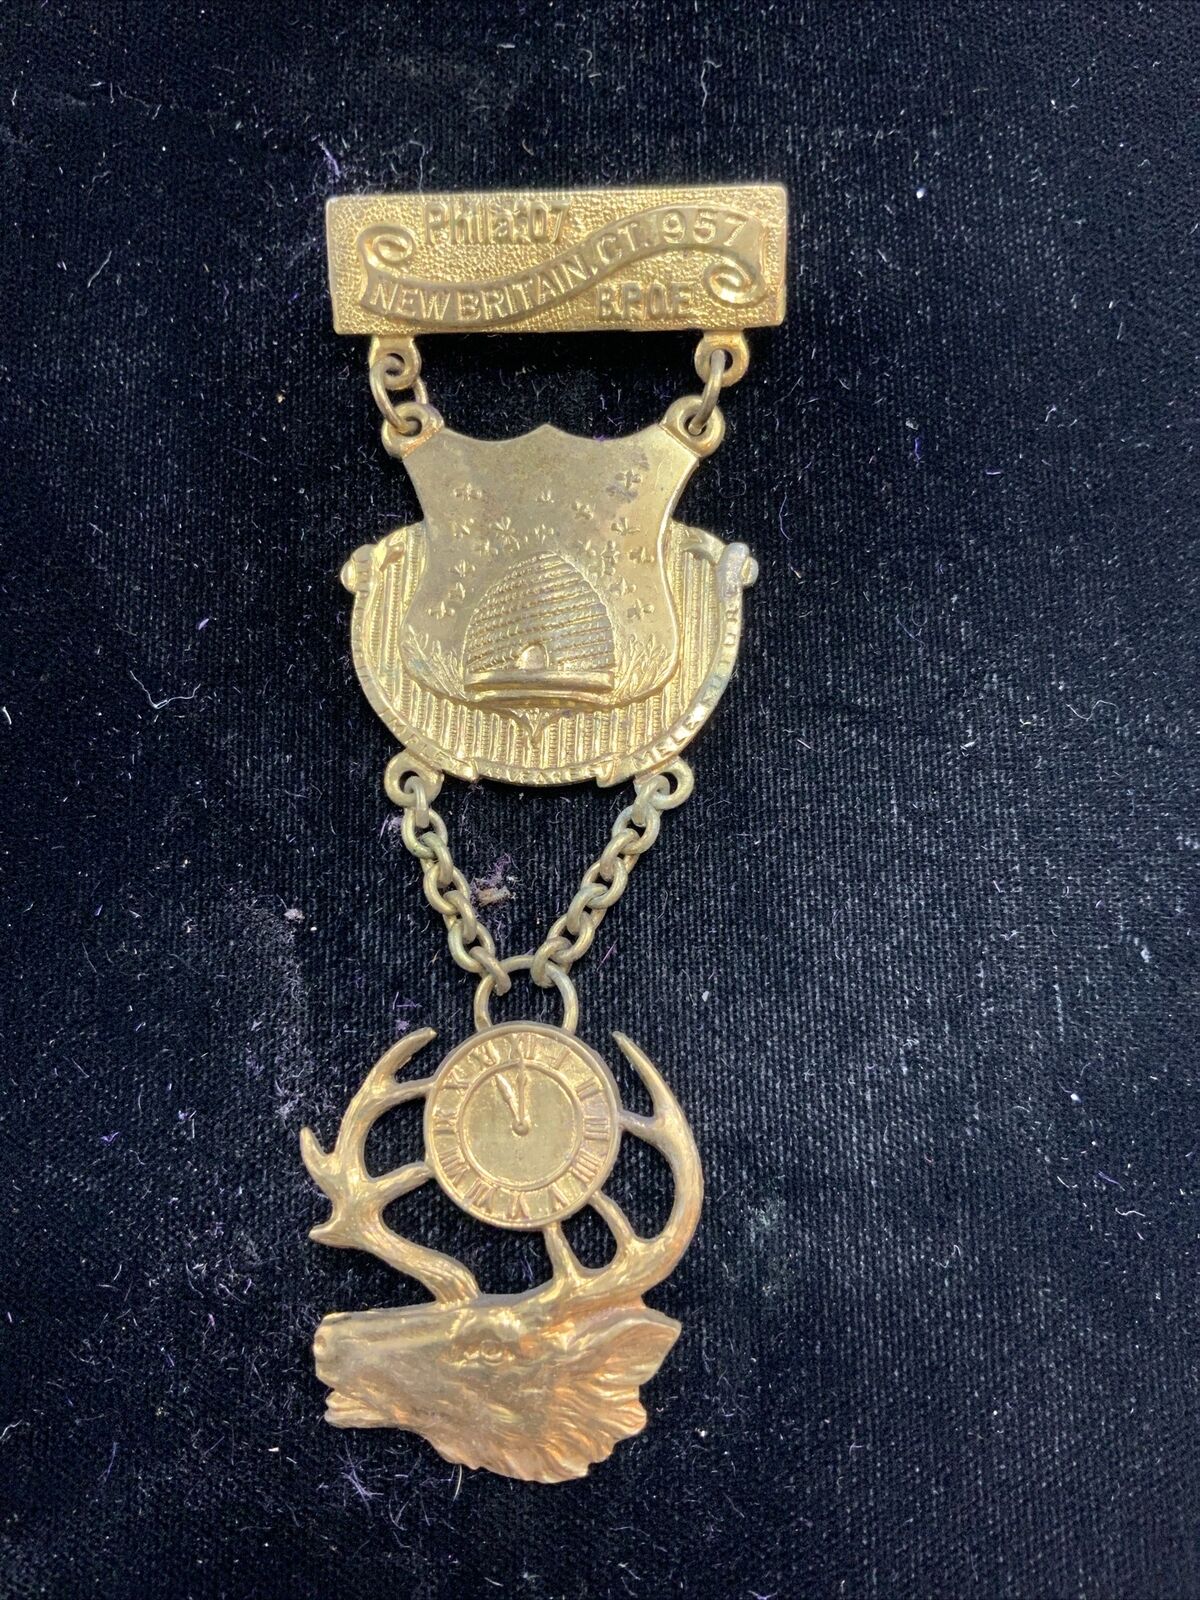 Vintage Antique Bpoe Order Of Elks Lodge Member Pin Badge Medal For